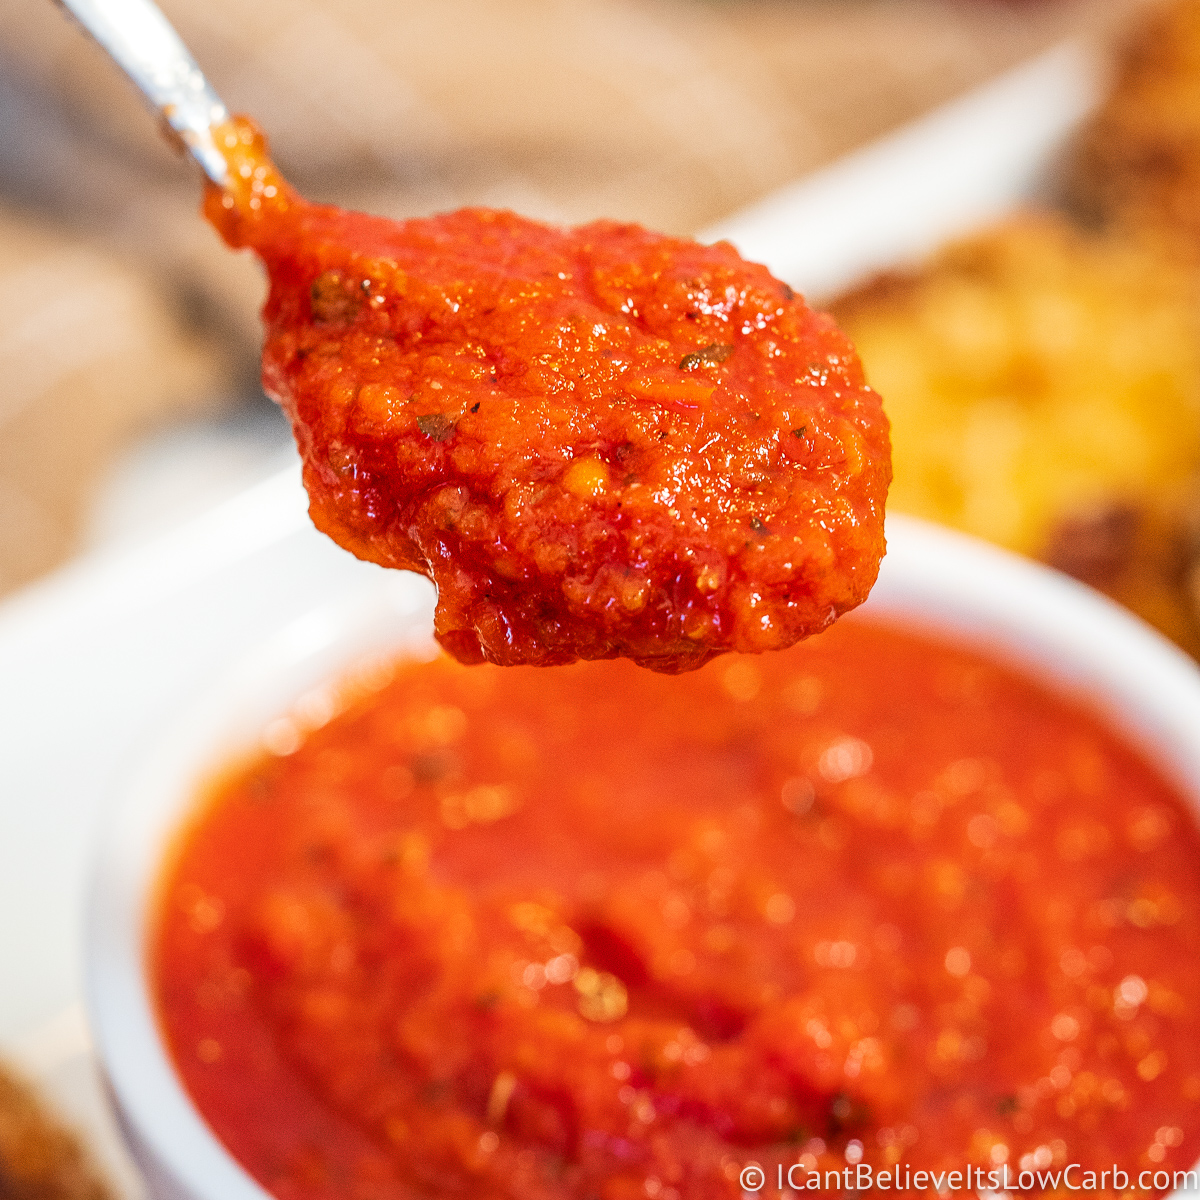 Easy Keto Tomato Sauce - Quick Marinara - Green and Keto